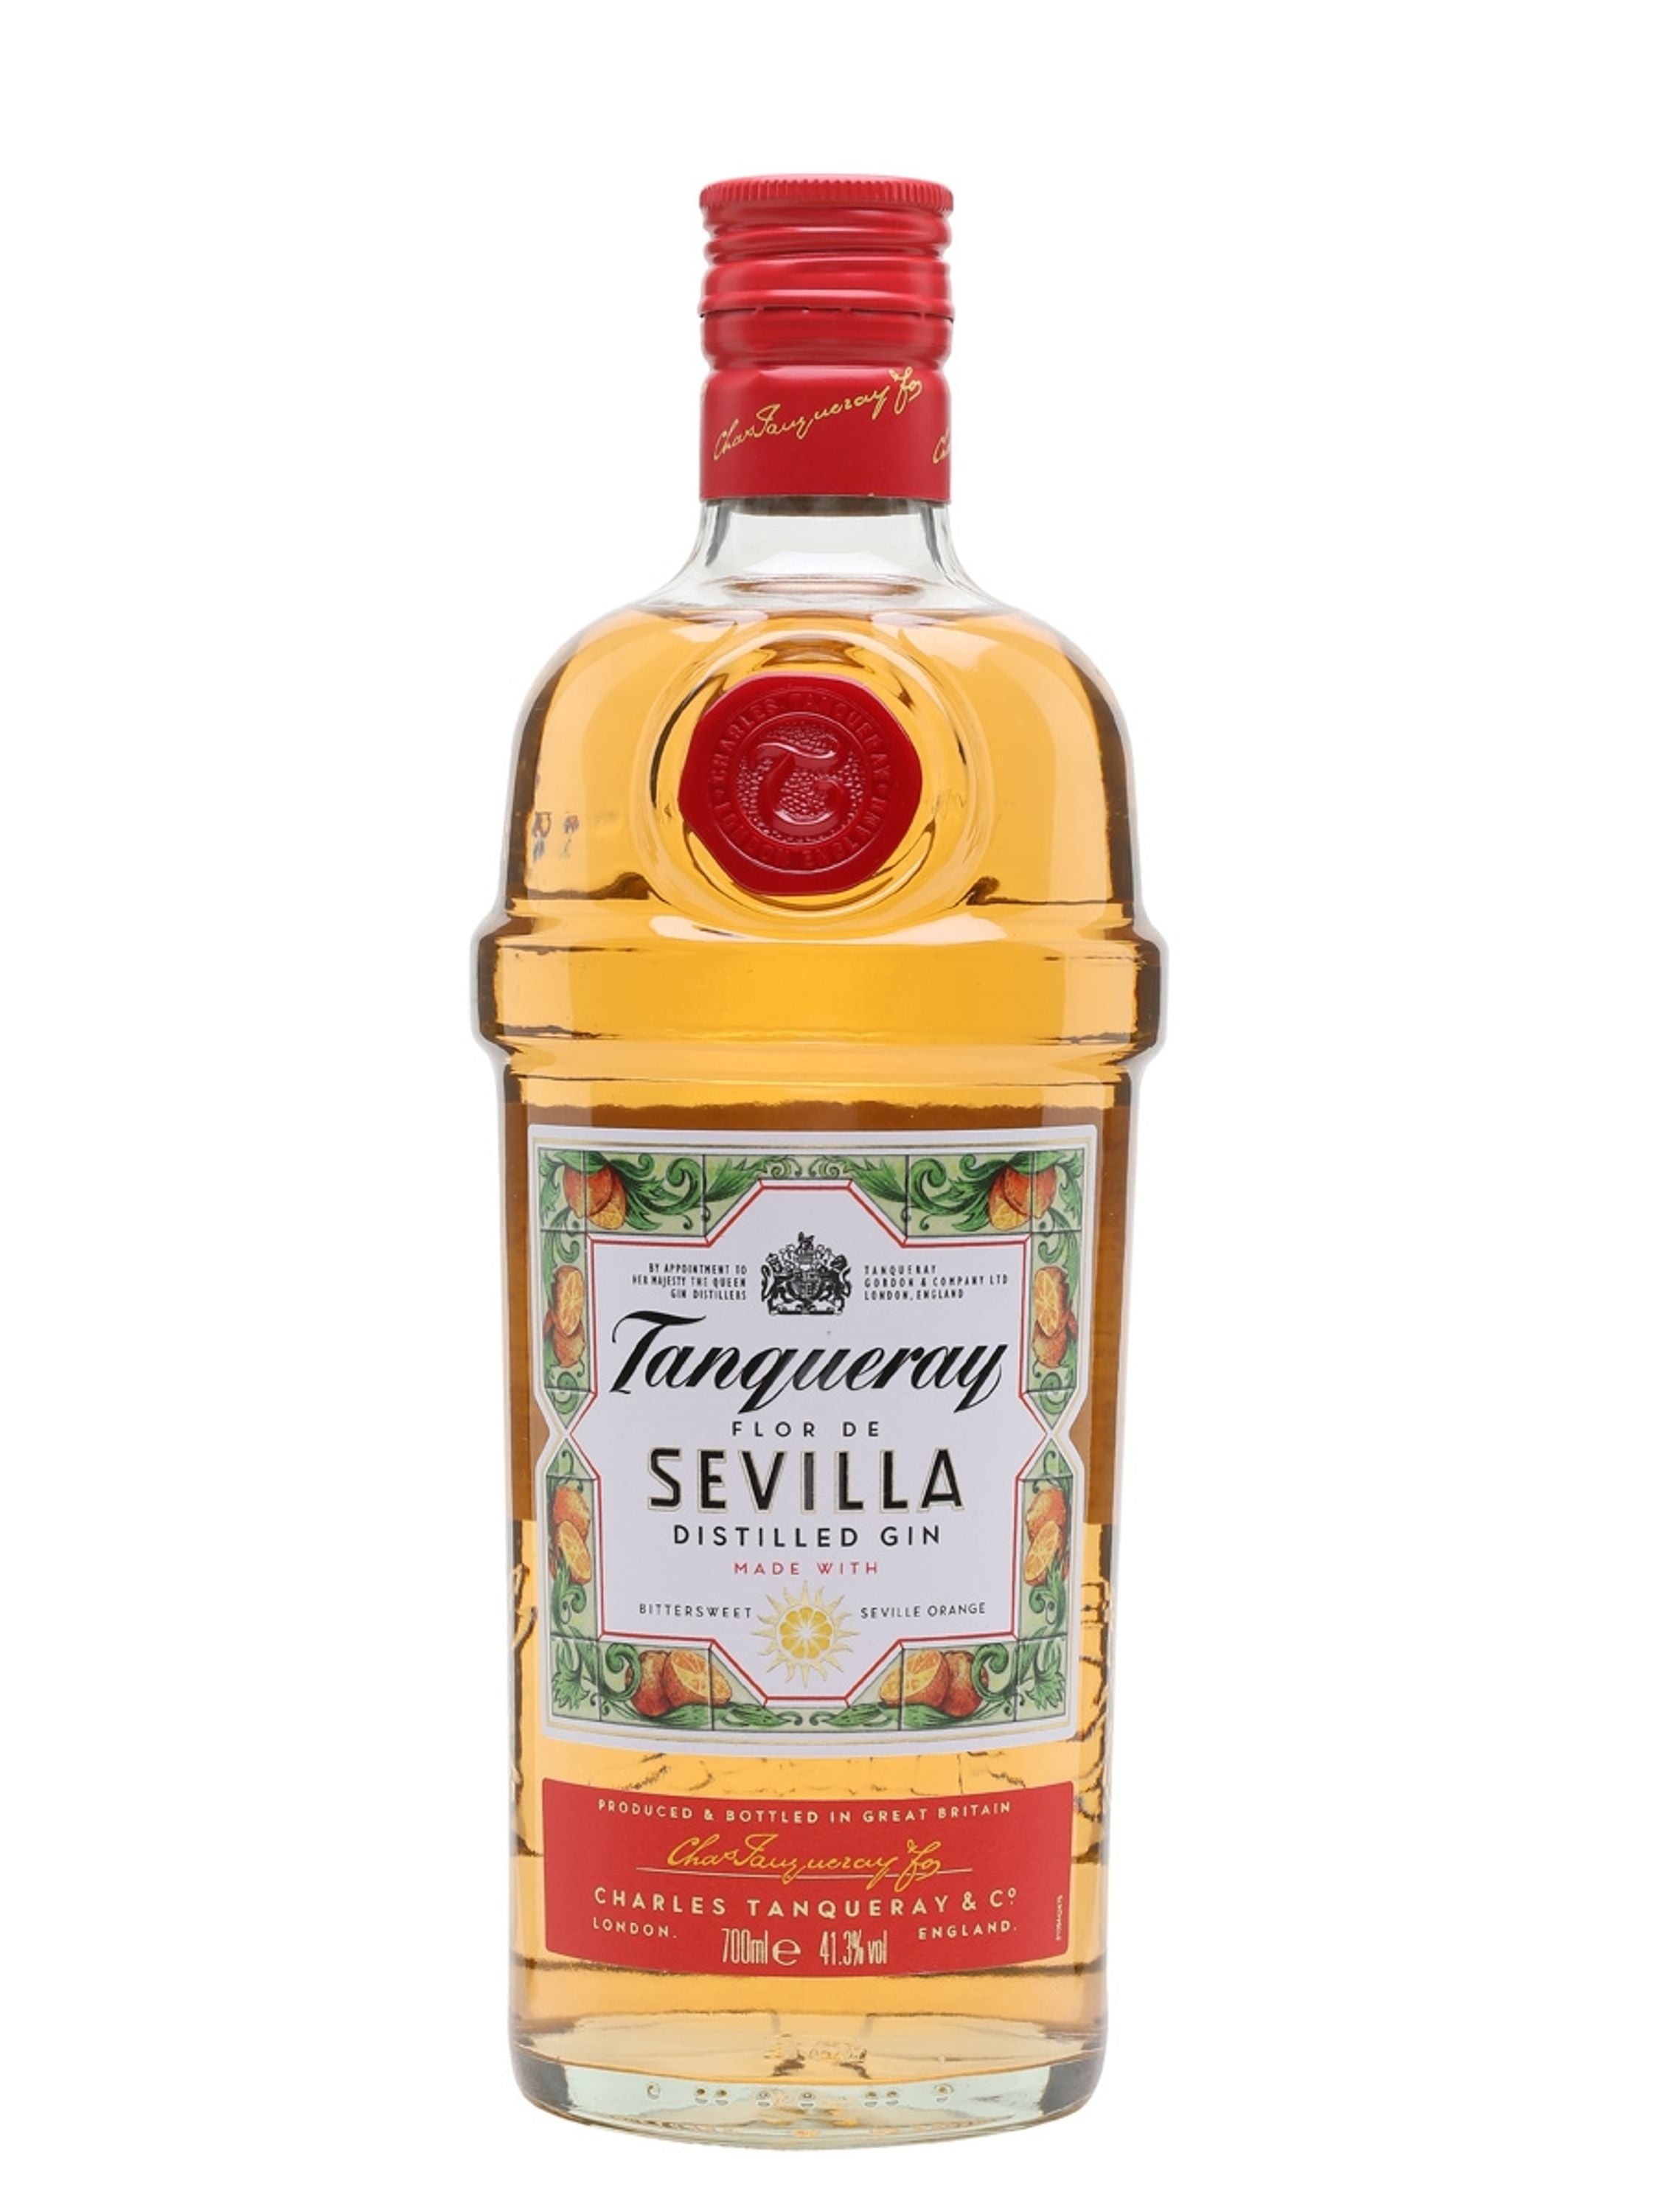 Tanqueray Flor de Sevilla Distilled Gin 0,7l, alc. 41,3 Vol.-%, Gin England